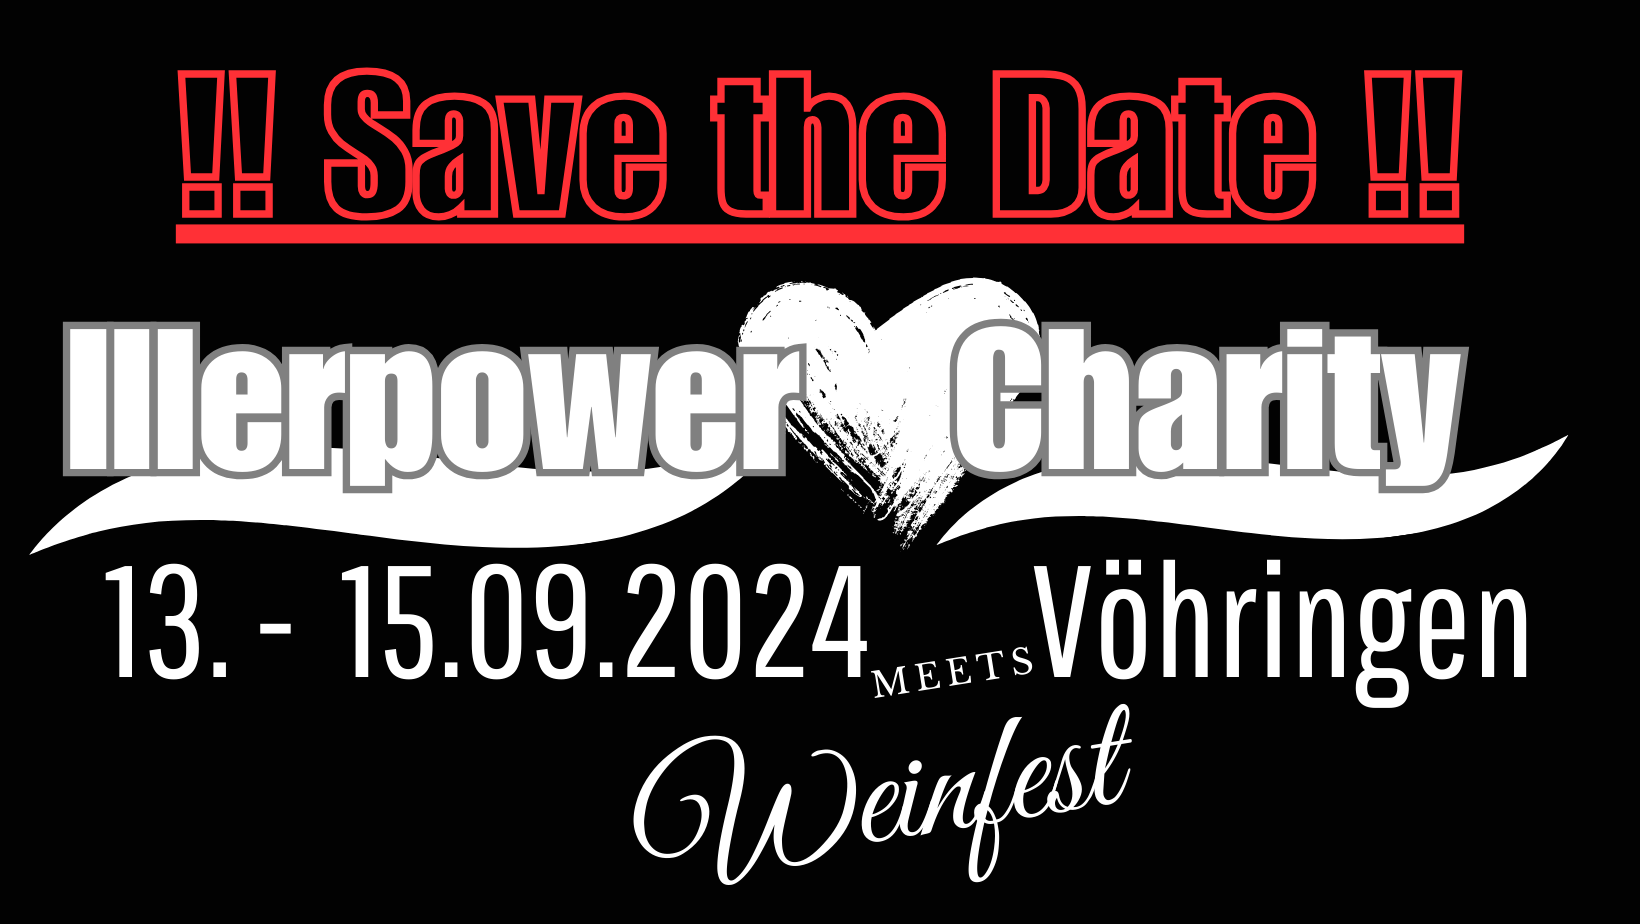 Illerpower Chatity 2024 meets Weinfest in Vöhringen an der Iller